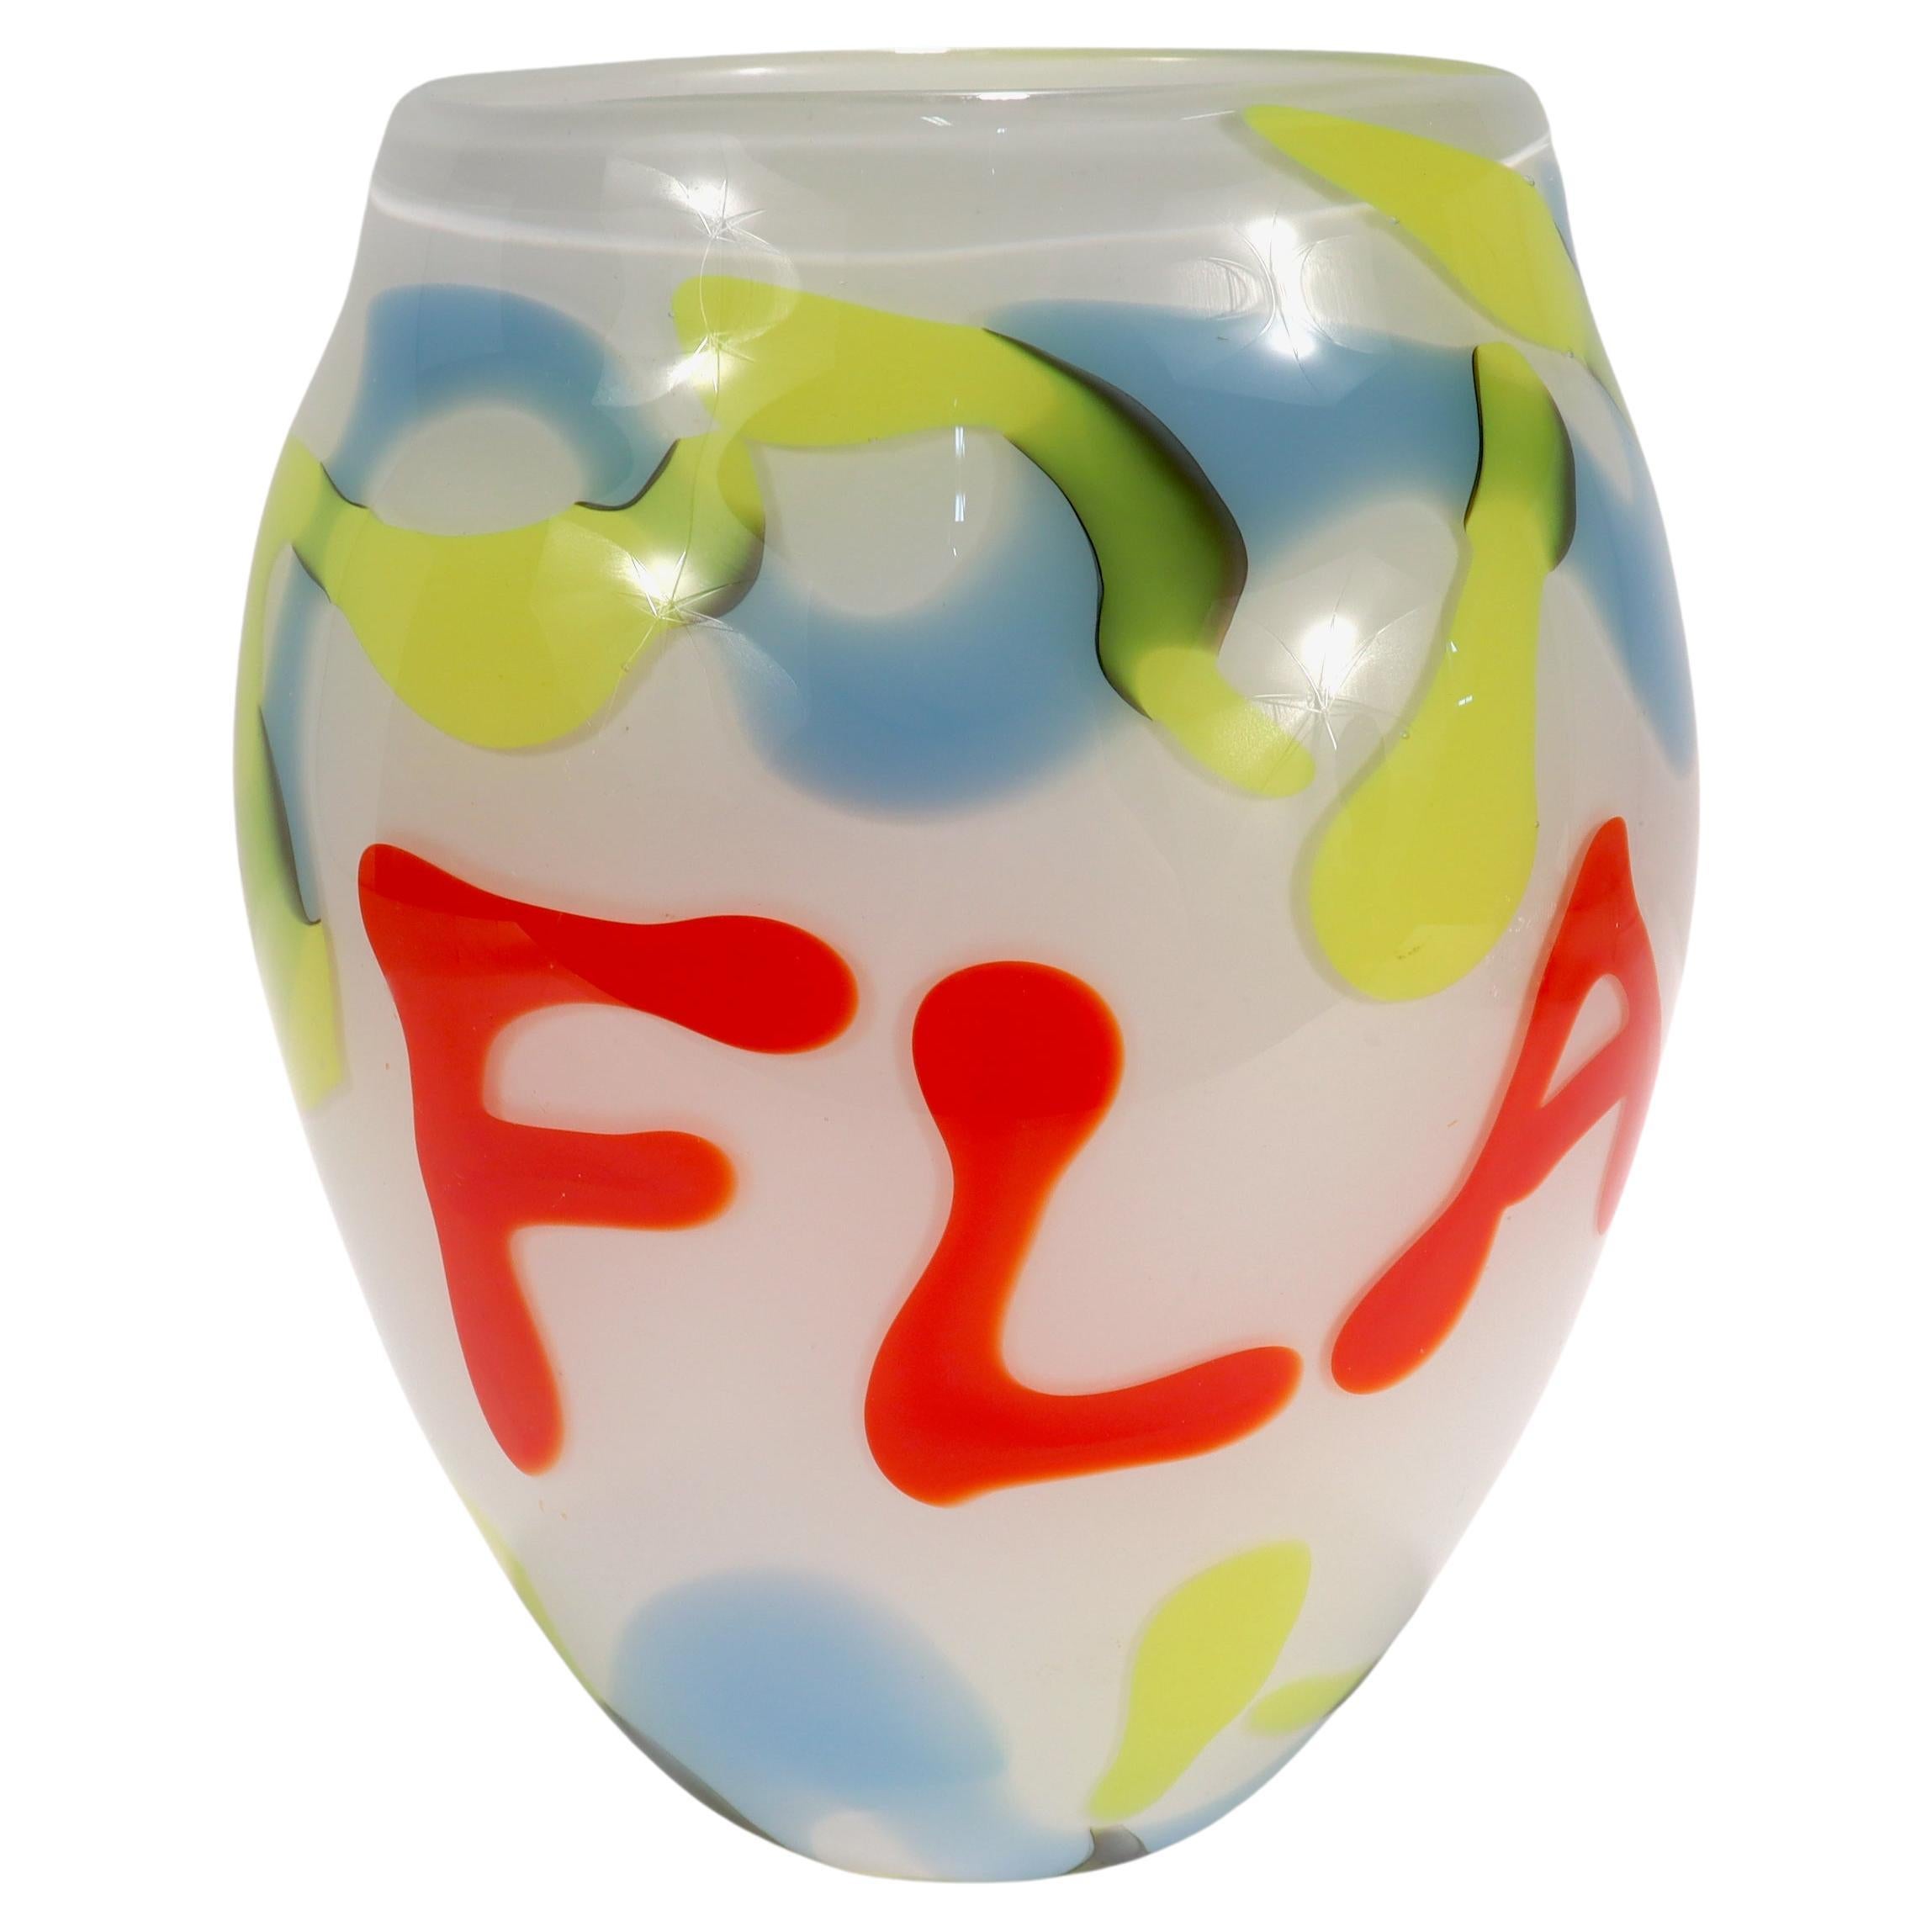 Vase Pop-Art en verre d'art blanc, bleu, jaune et rouge « FLASH », 1999